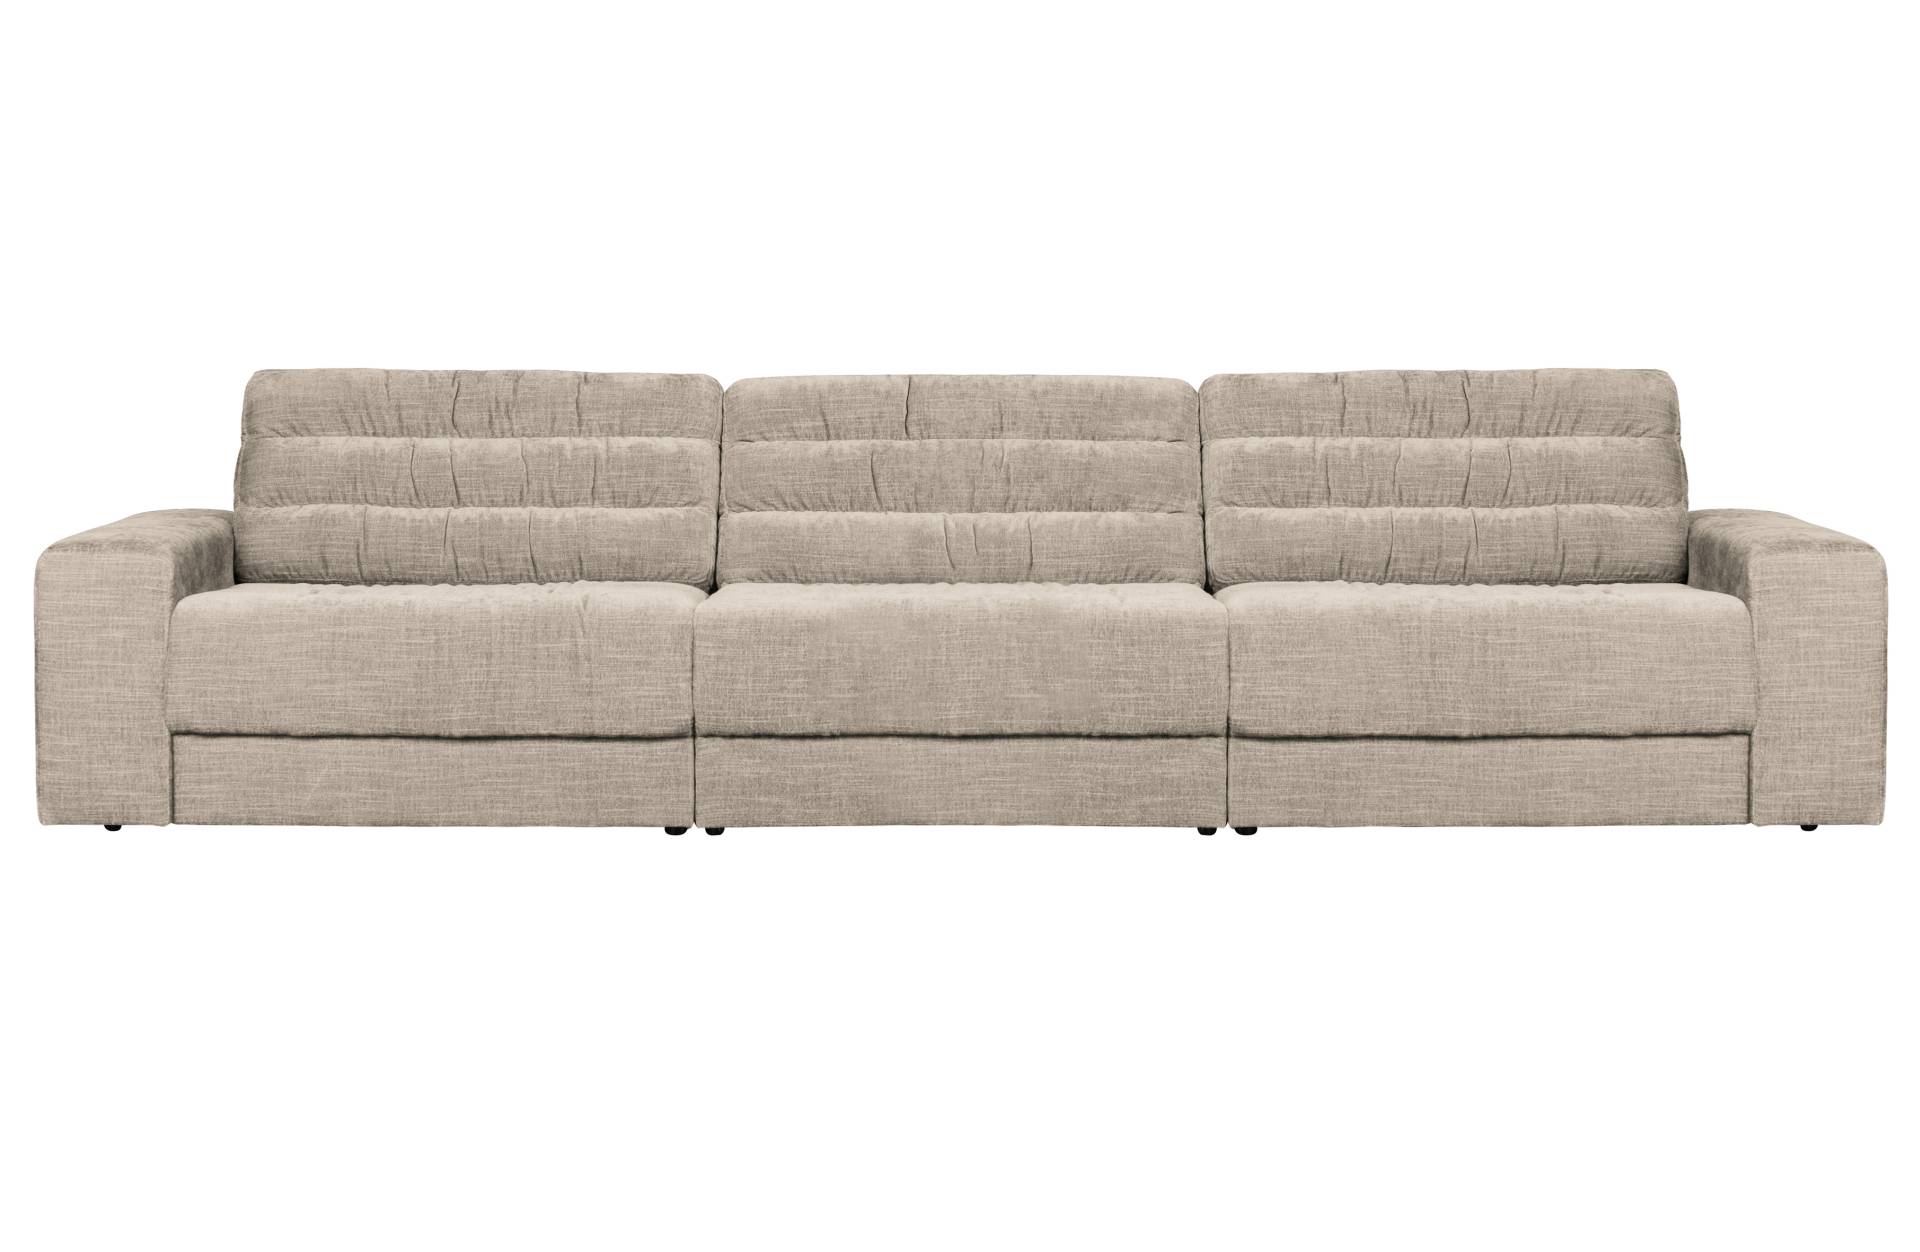 Das Sofa Date überzeugt mit seinem klassischen Design. Gefertigt wurde es aus einem Vintage Stoff, welcher einen Nougat Farbton besitzen. Das Gestell ist aus Kunststoff und hat eine schwarze Farbe. Das Sofa hat eine Breite von 316 cm.